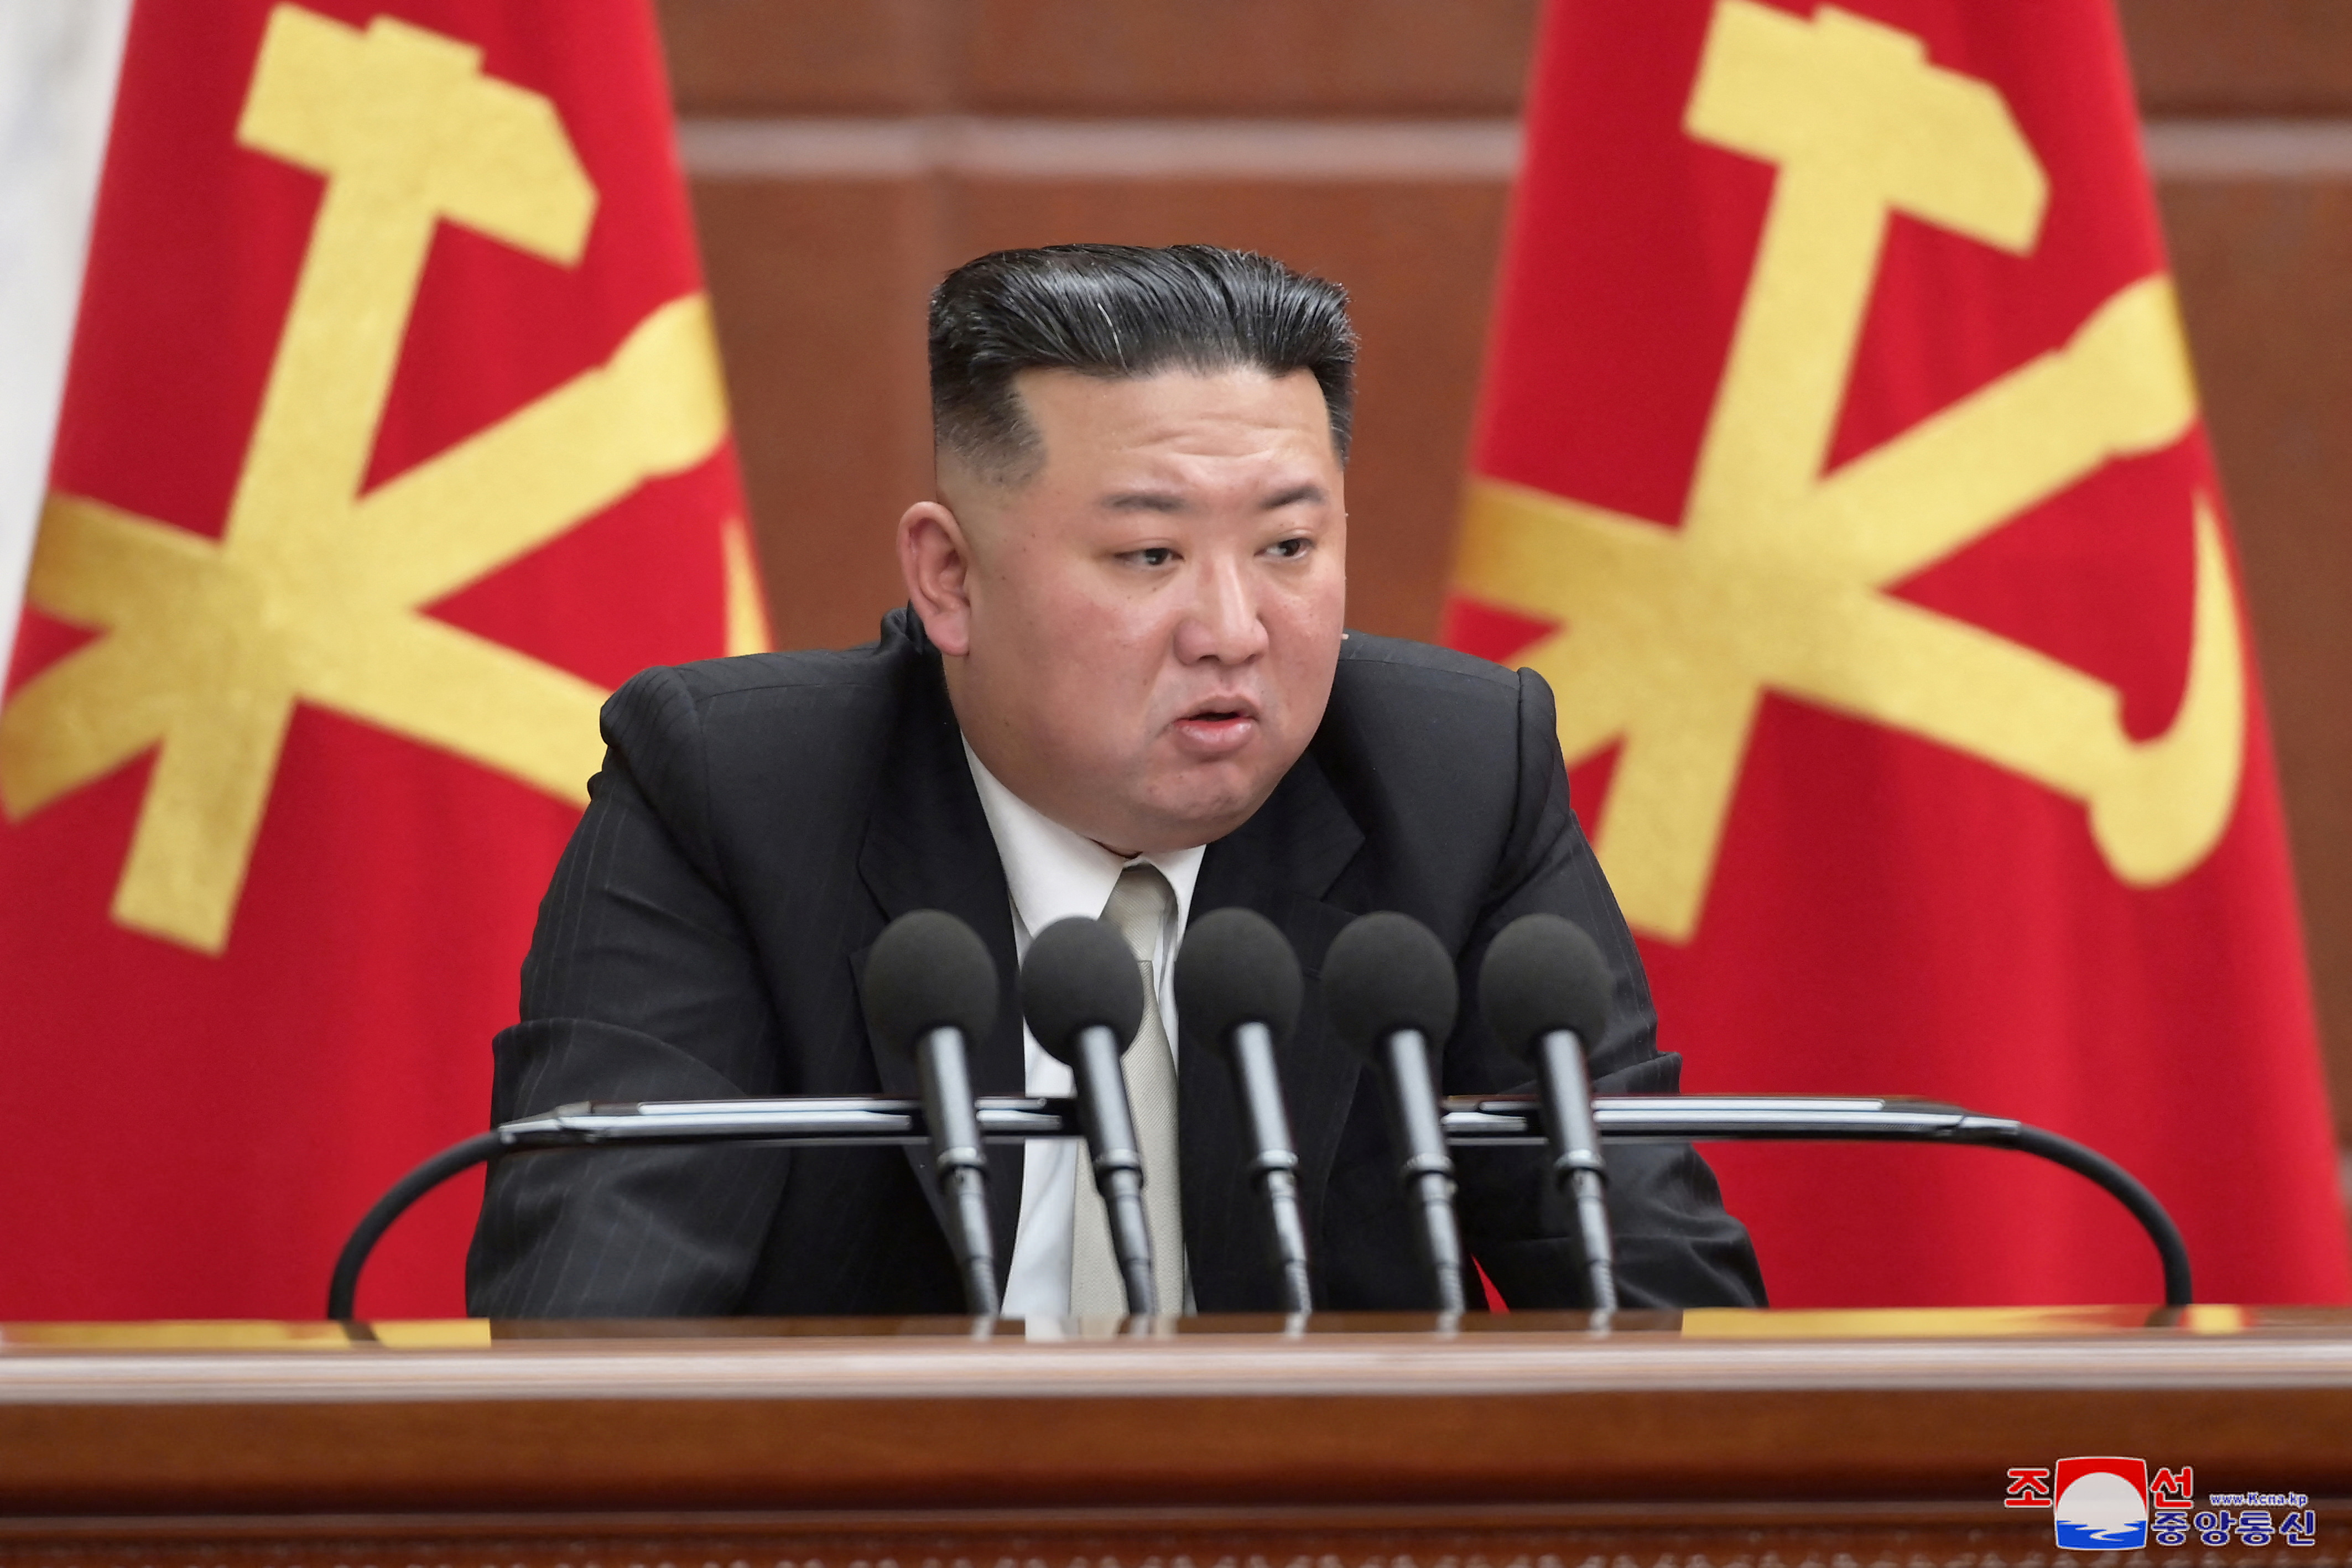 El líder norcoreano, Kim Jong Un, asiste a la sexta reunión ampliada del octavo Comité Central del Partido de los Trabajadores en Pyongyang, Corea del Norte (KCNA vía REUTERS)
